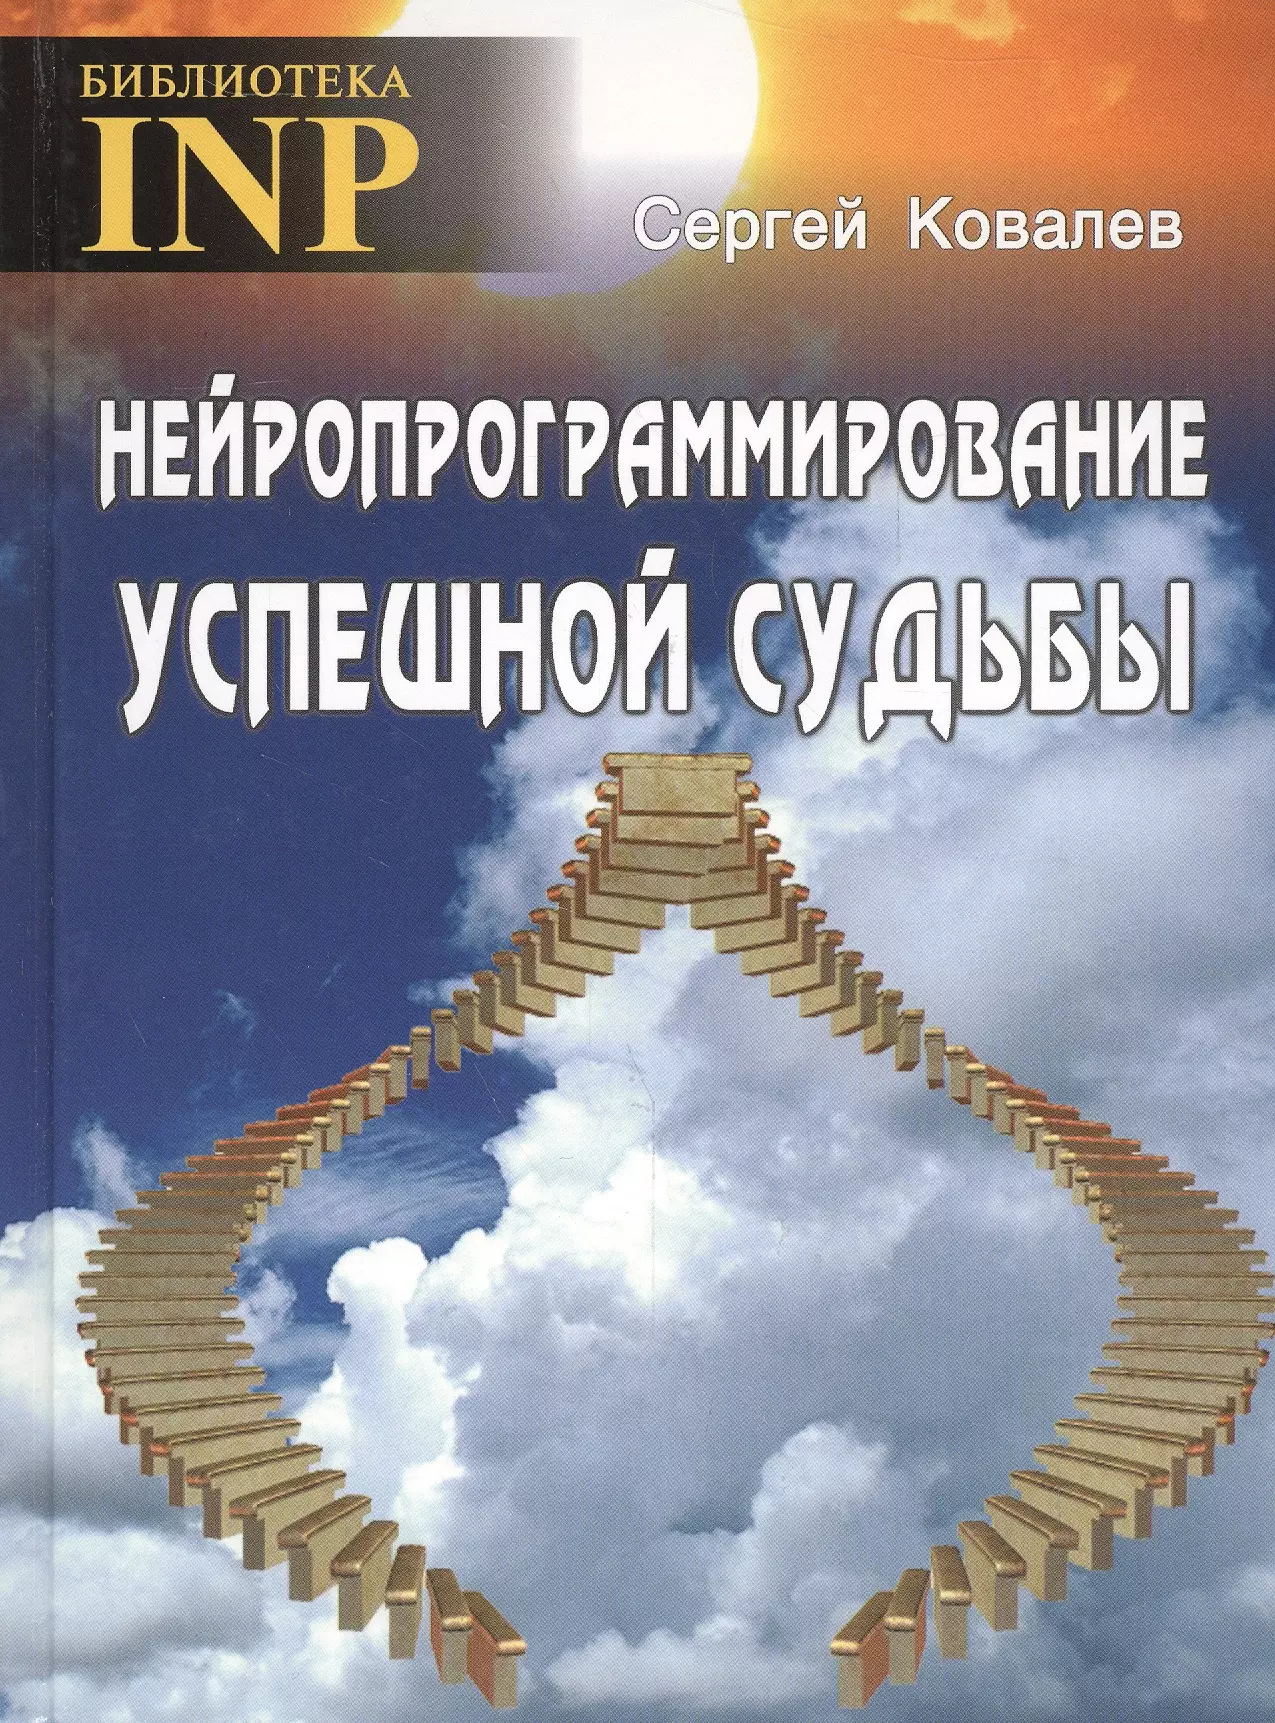 Ковалев Сергей Викторович Нейропрограммирование успешной судьбы. 6-е издание